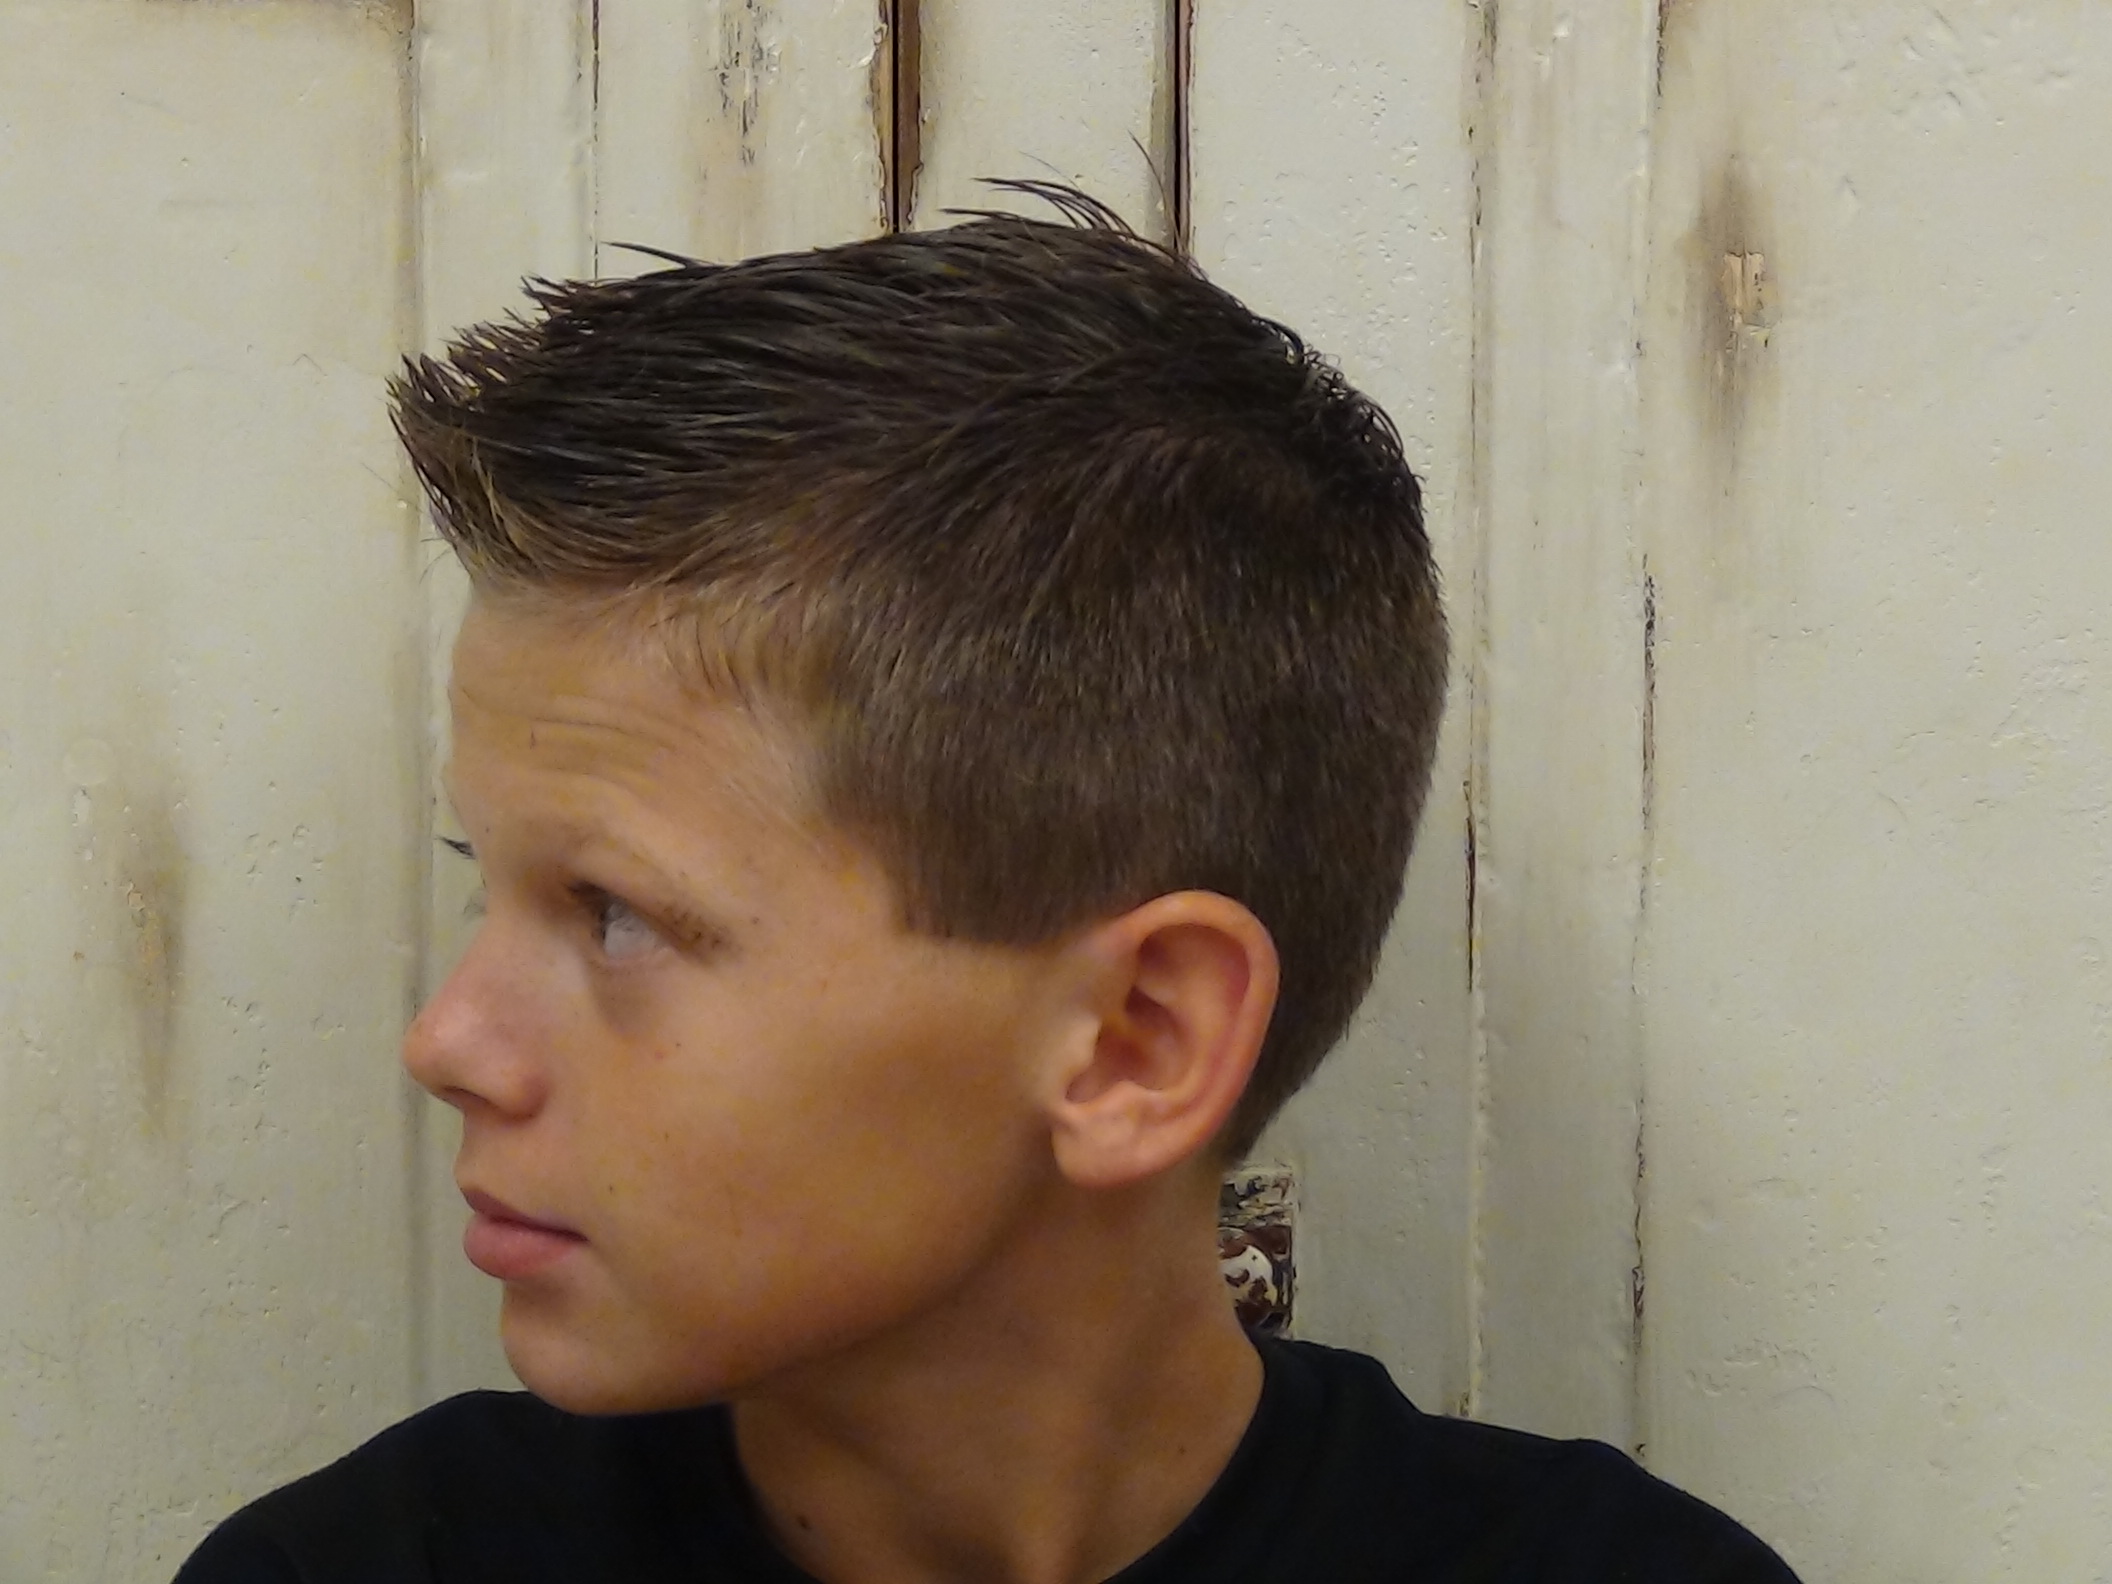 Teen boy forum. Причёски для мальчиков. Стрижки для мальчиков. Прическа для подростка мальчика. Причёски для мальчиков модные.